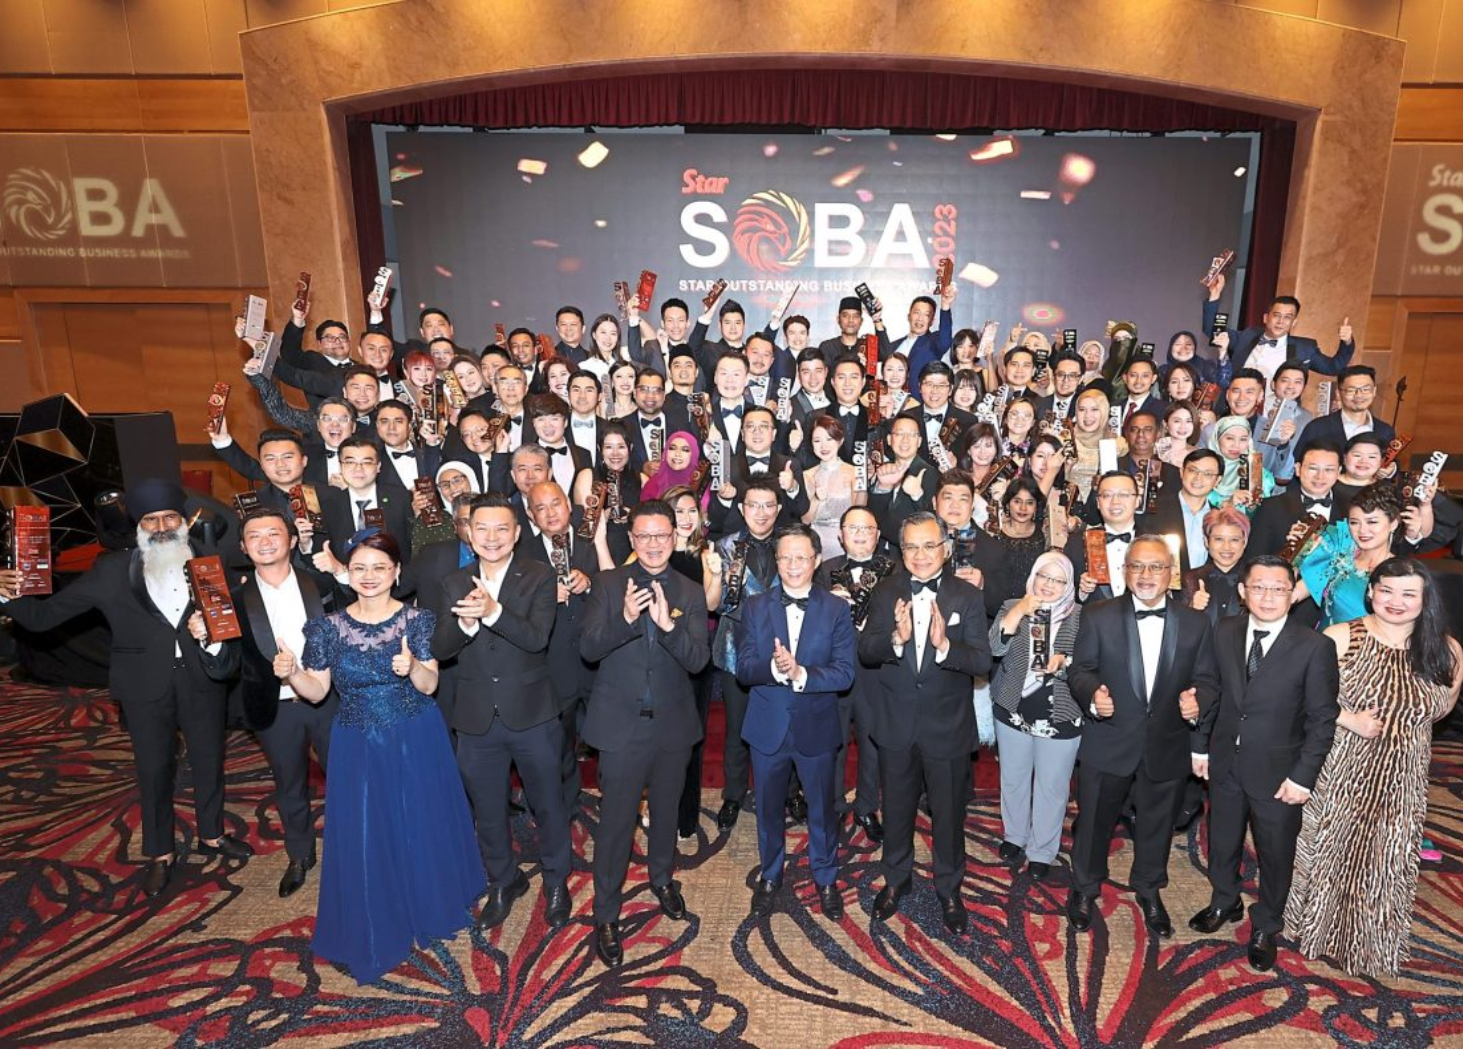 Celebrating success at SOBA